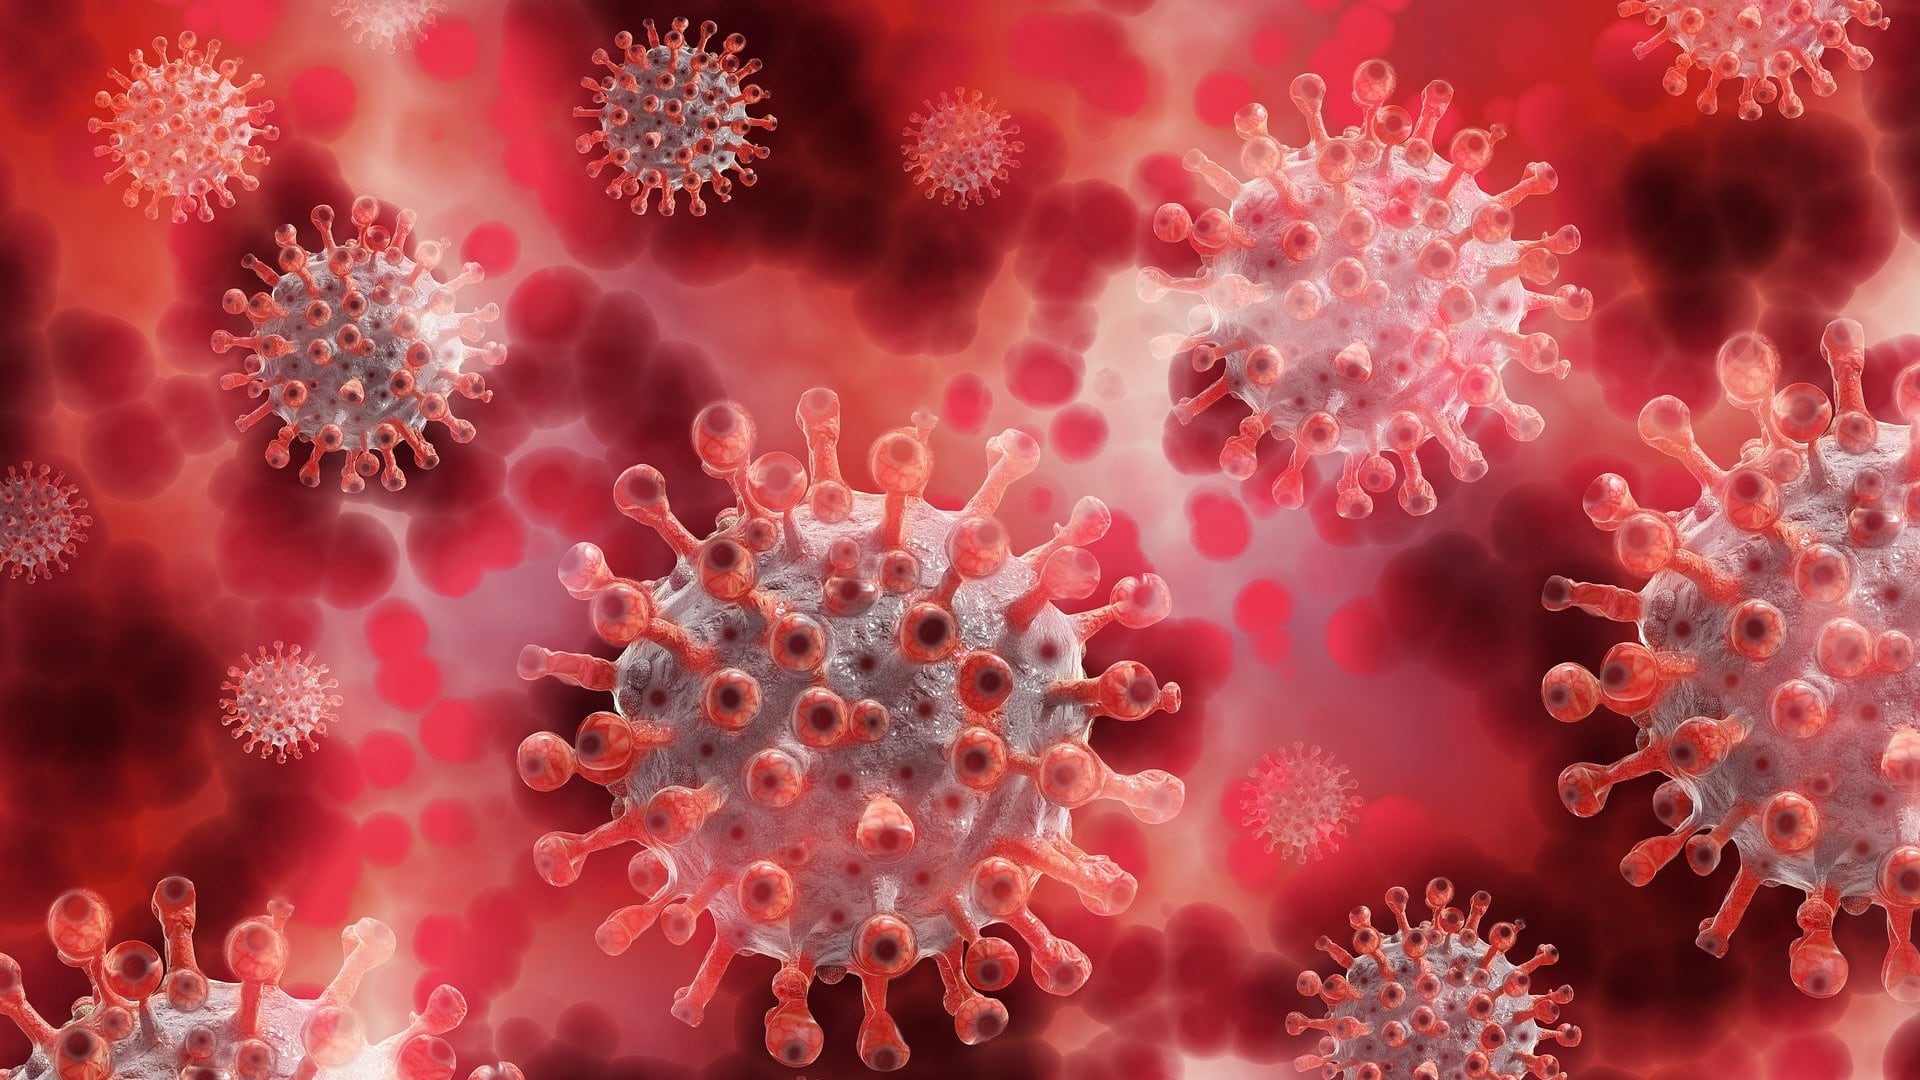 Novo teste rápido detecta coronavírus na saliva e indica a carga viral